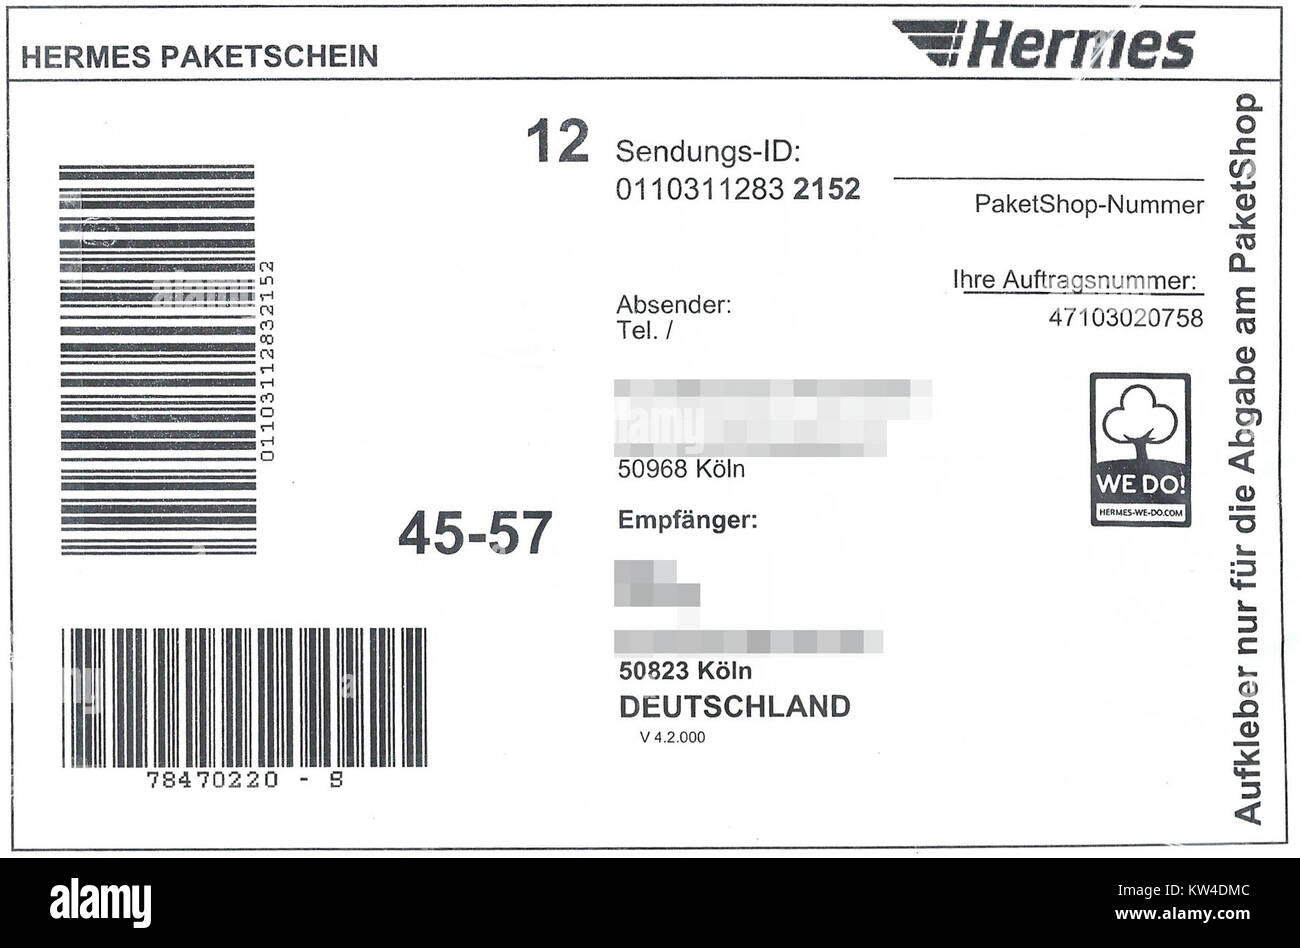 Hermes Paket via Paketshop Paketaufkleber 2017 Foto de stock